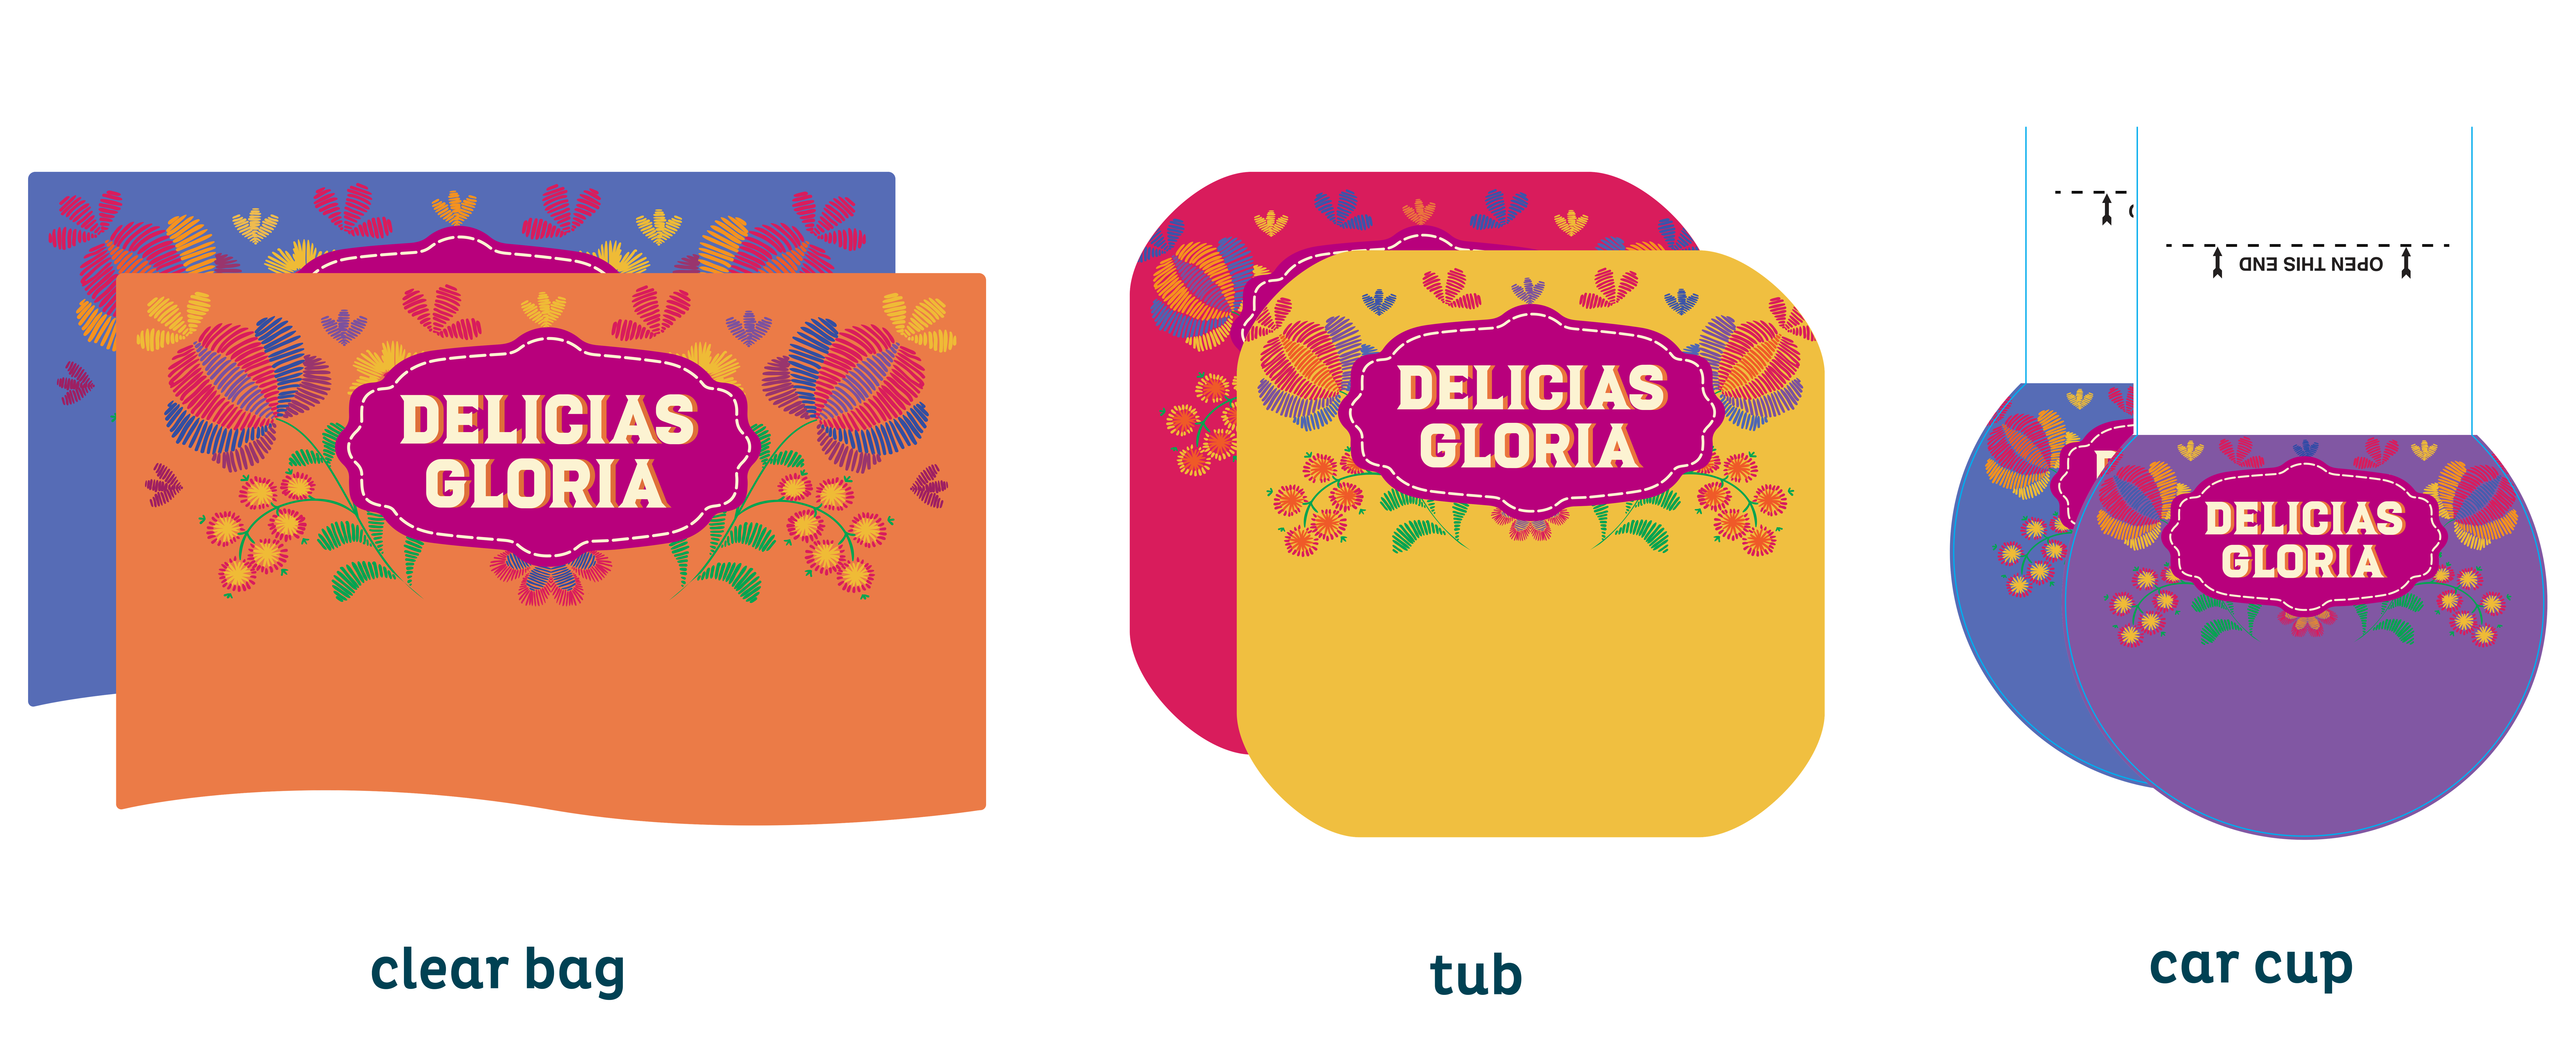 Delicias Gloria labels